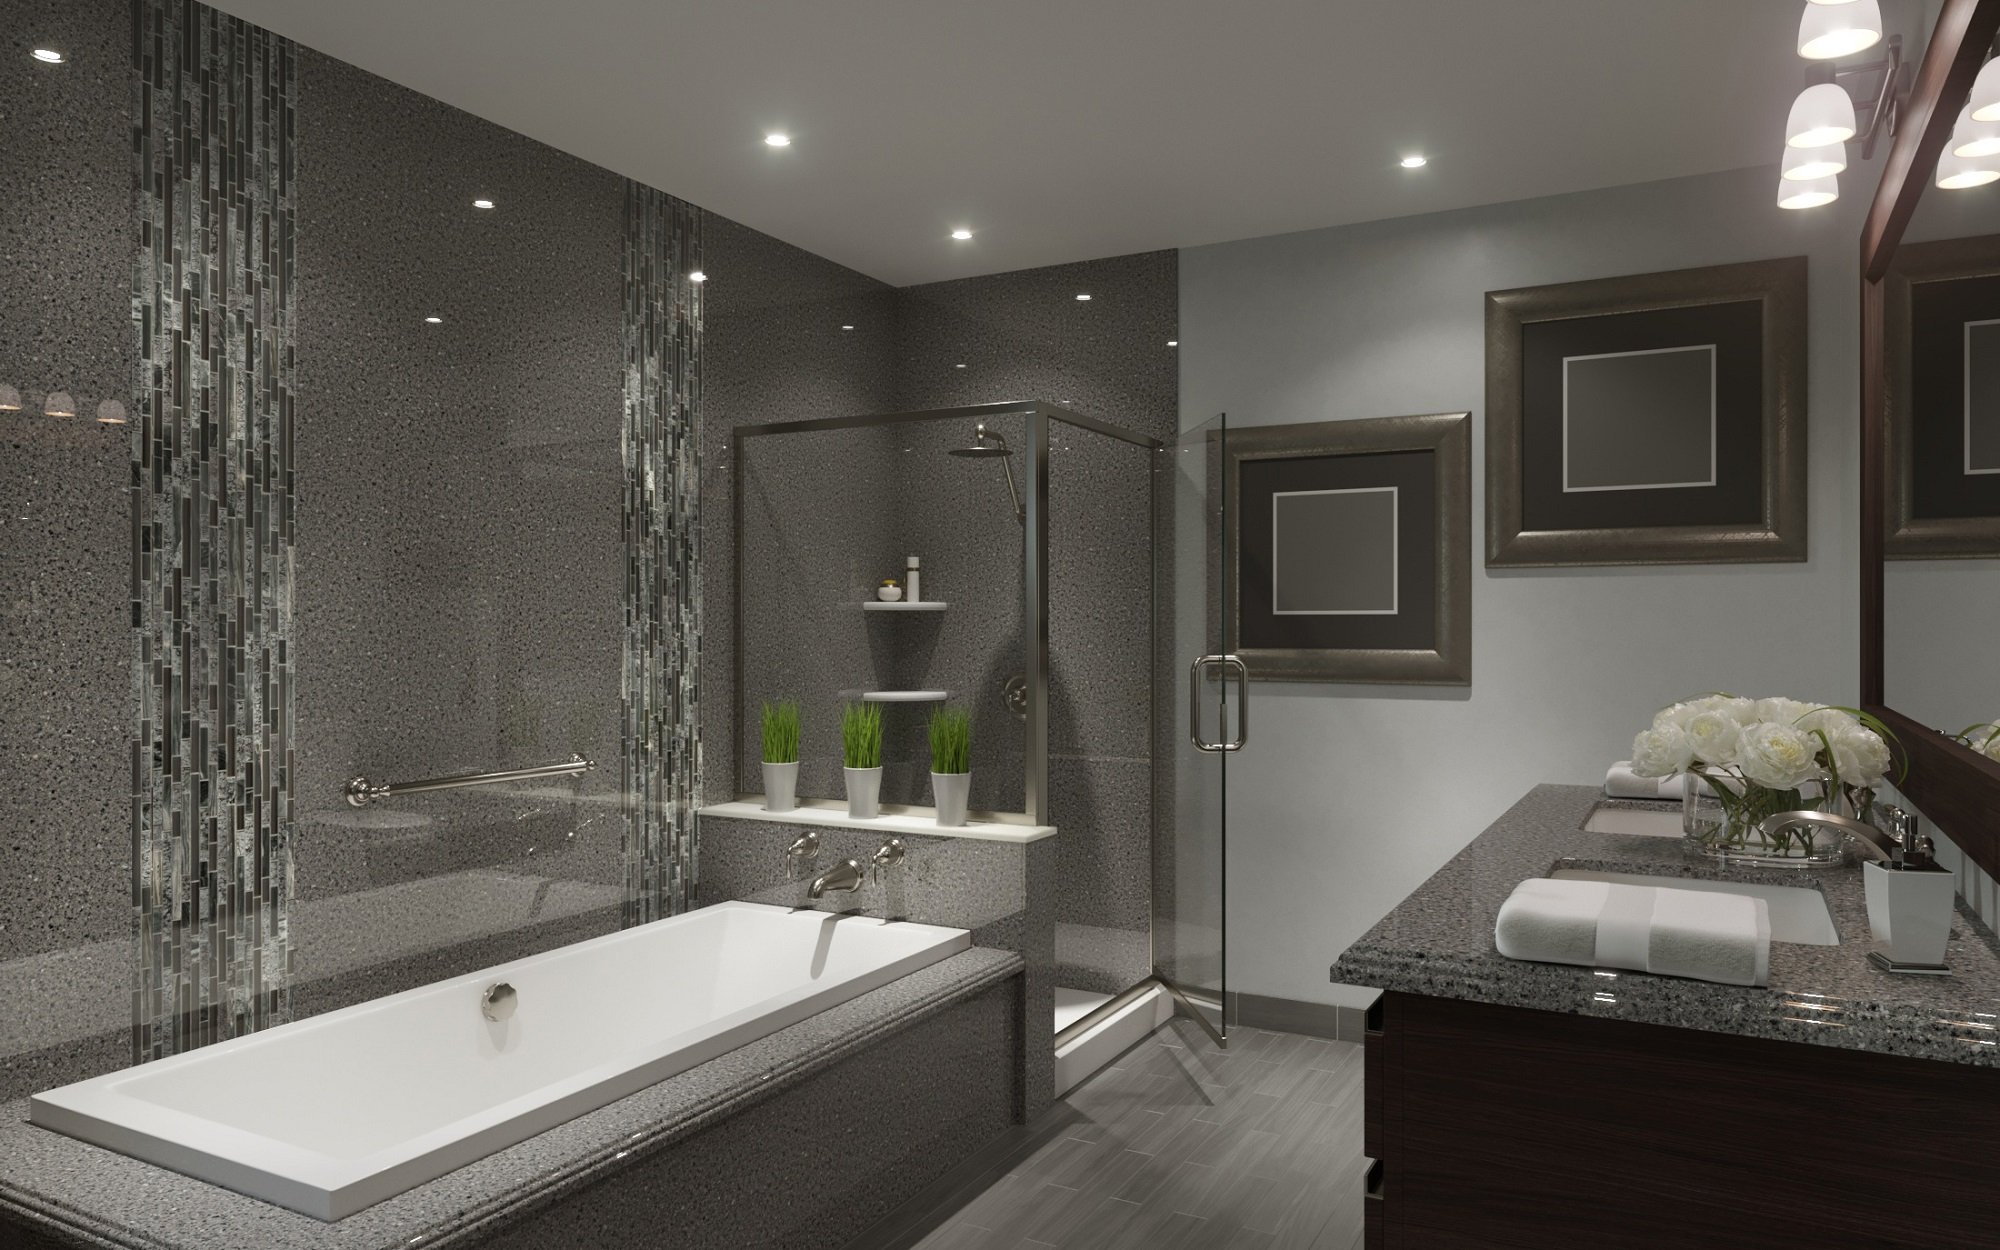 Hire The Best Licensed Bathroom Design & Full Remodeling Contractor In Joliet